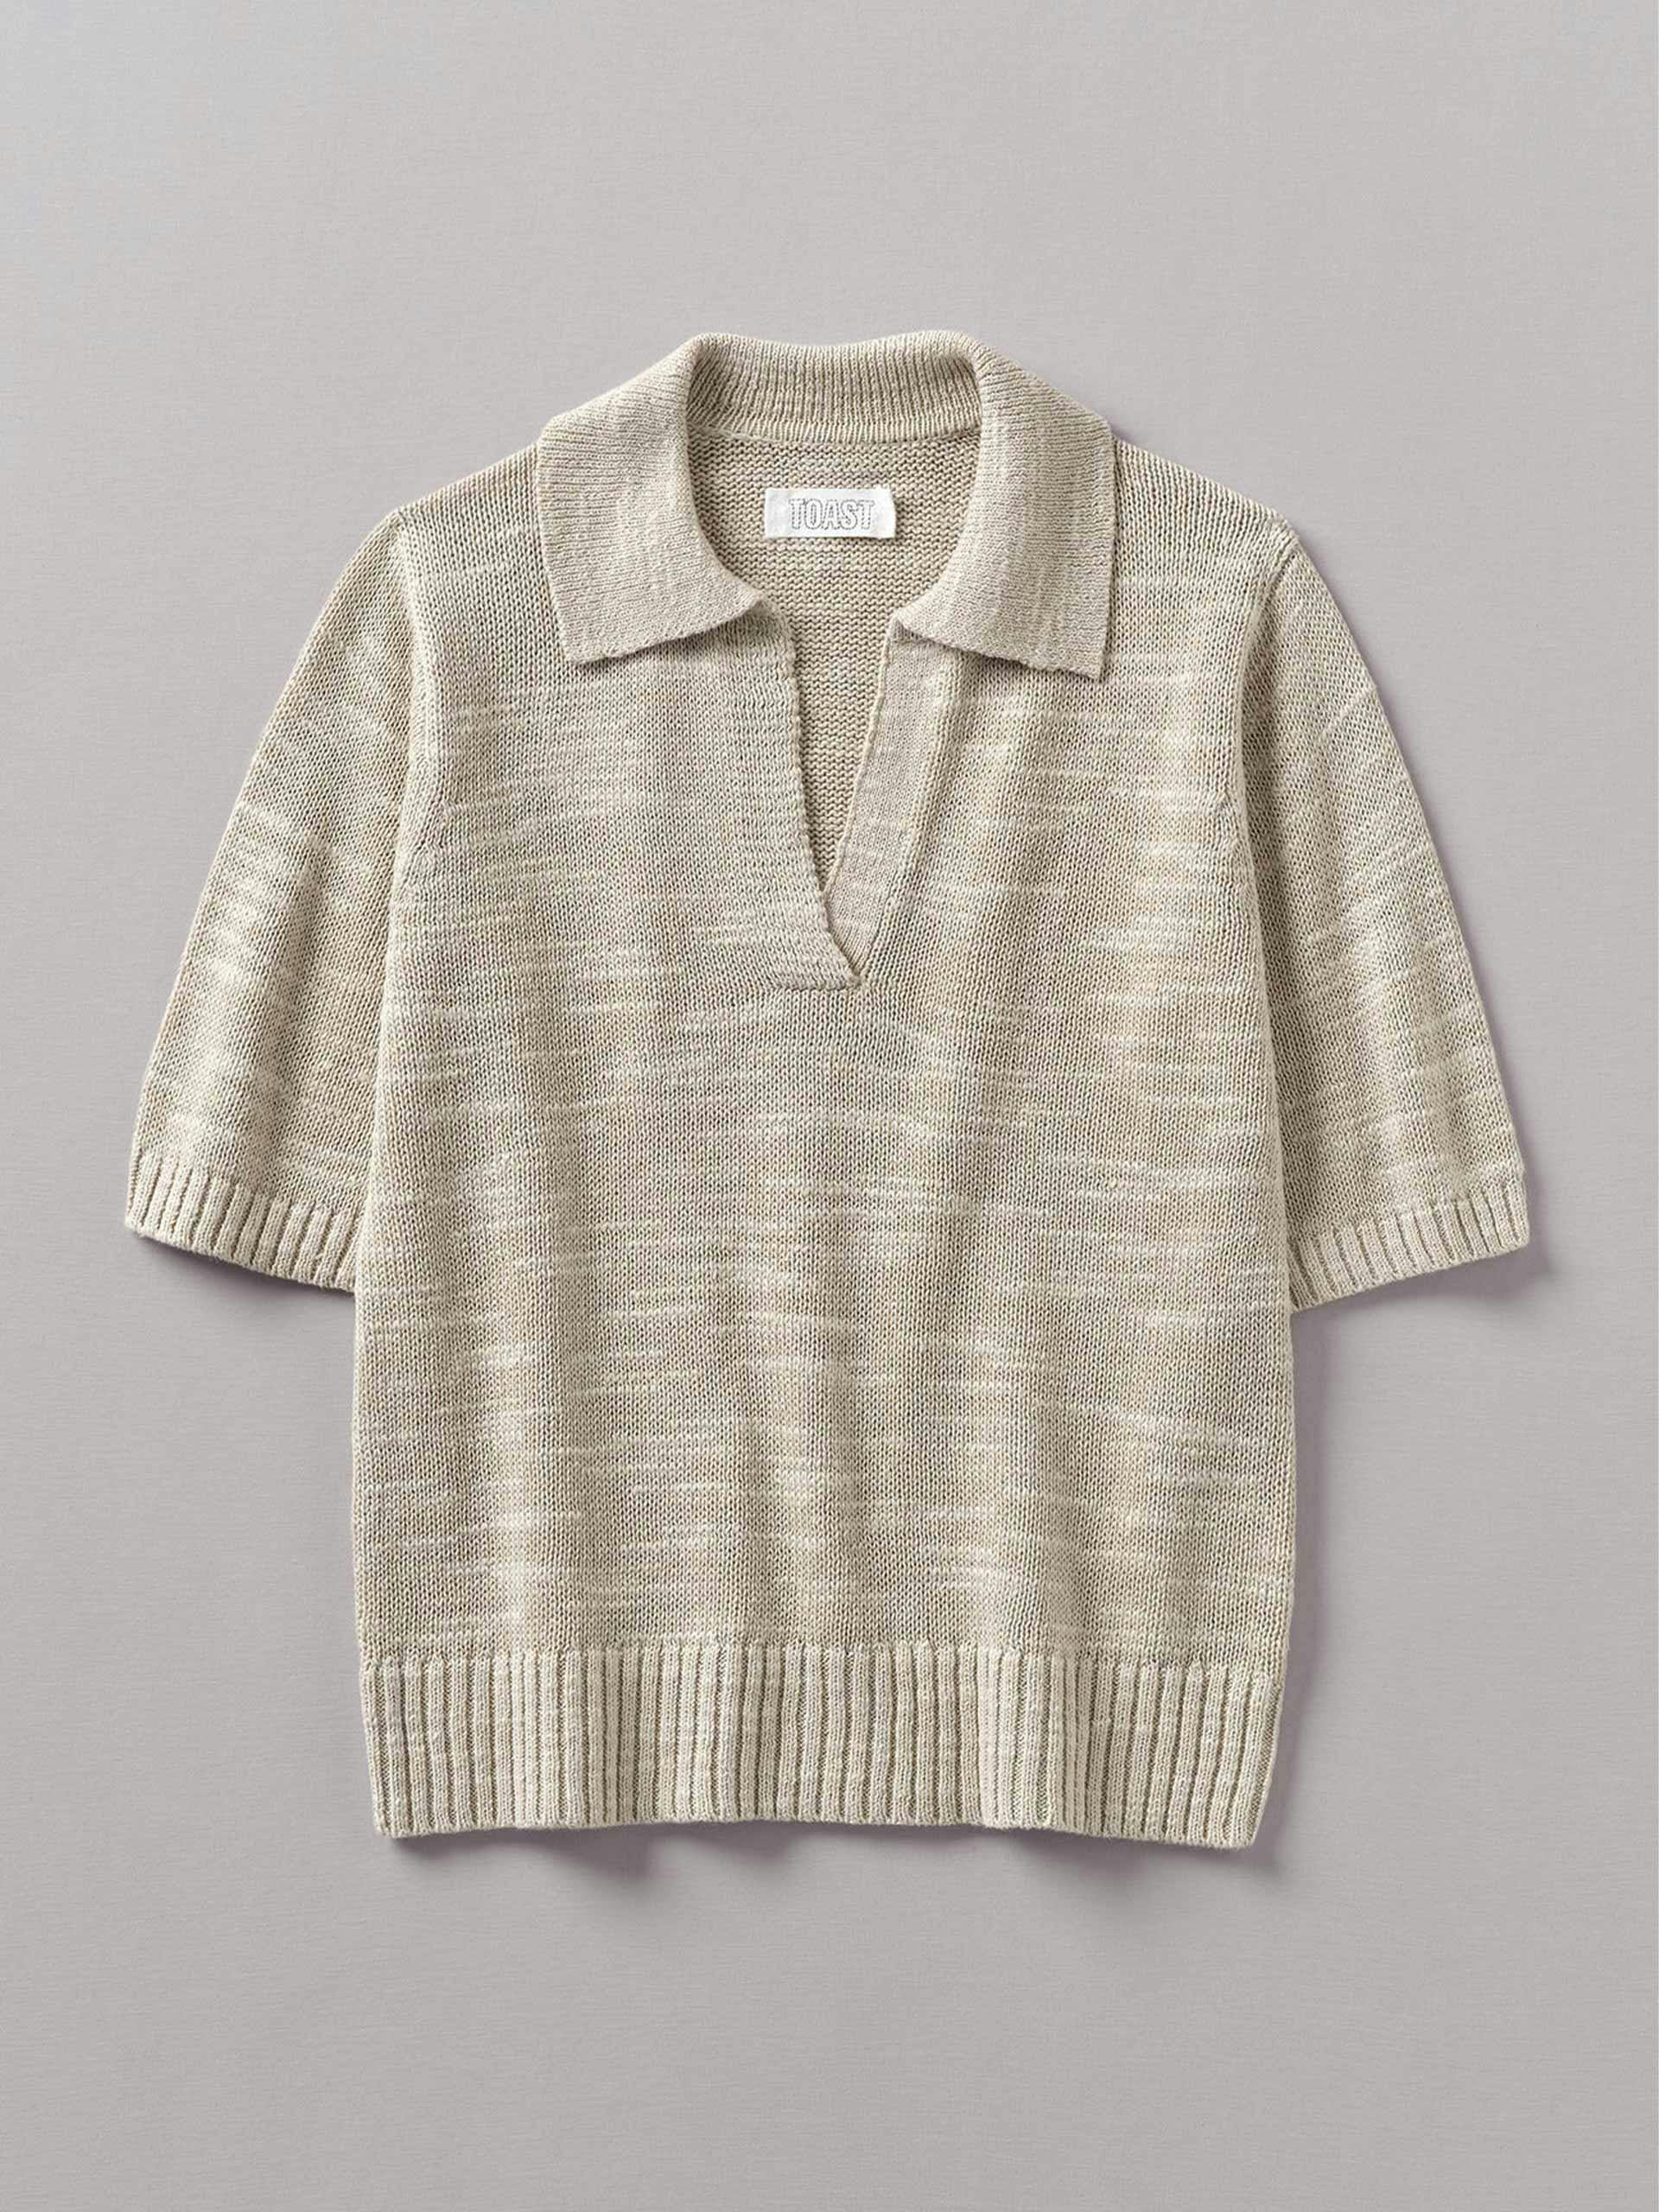 Collared linen cotton slub sweater